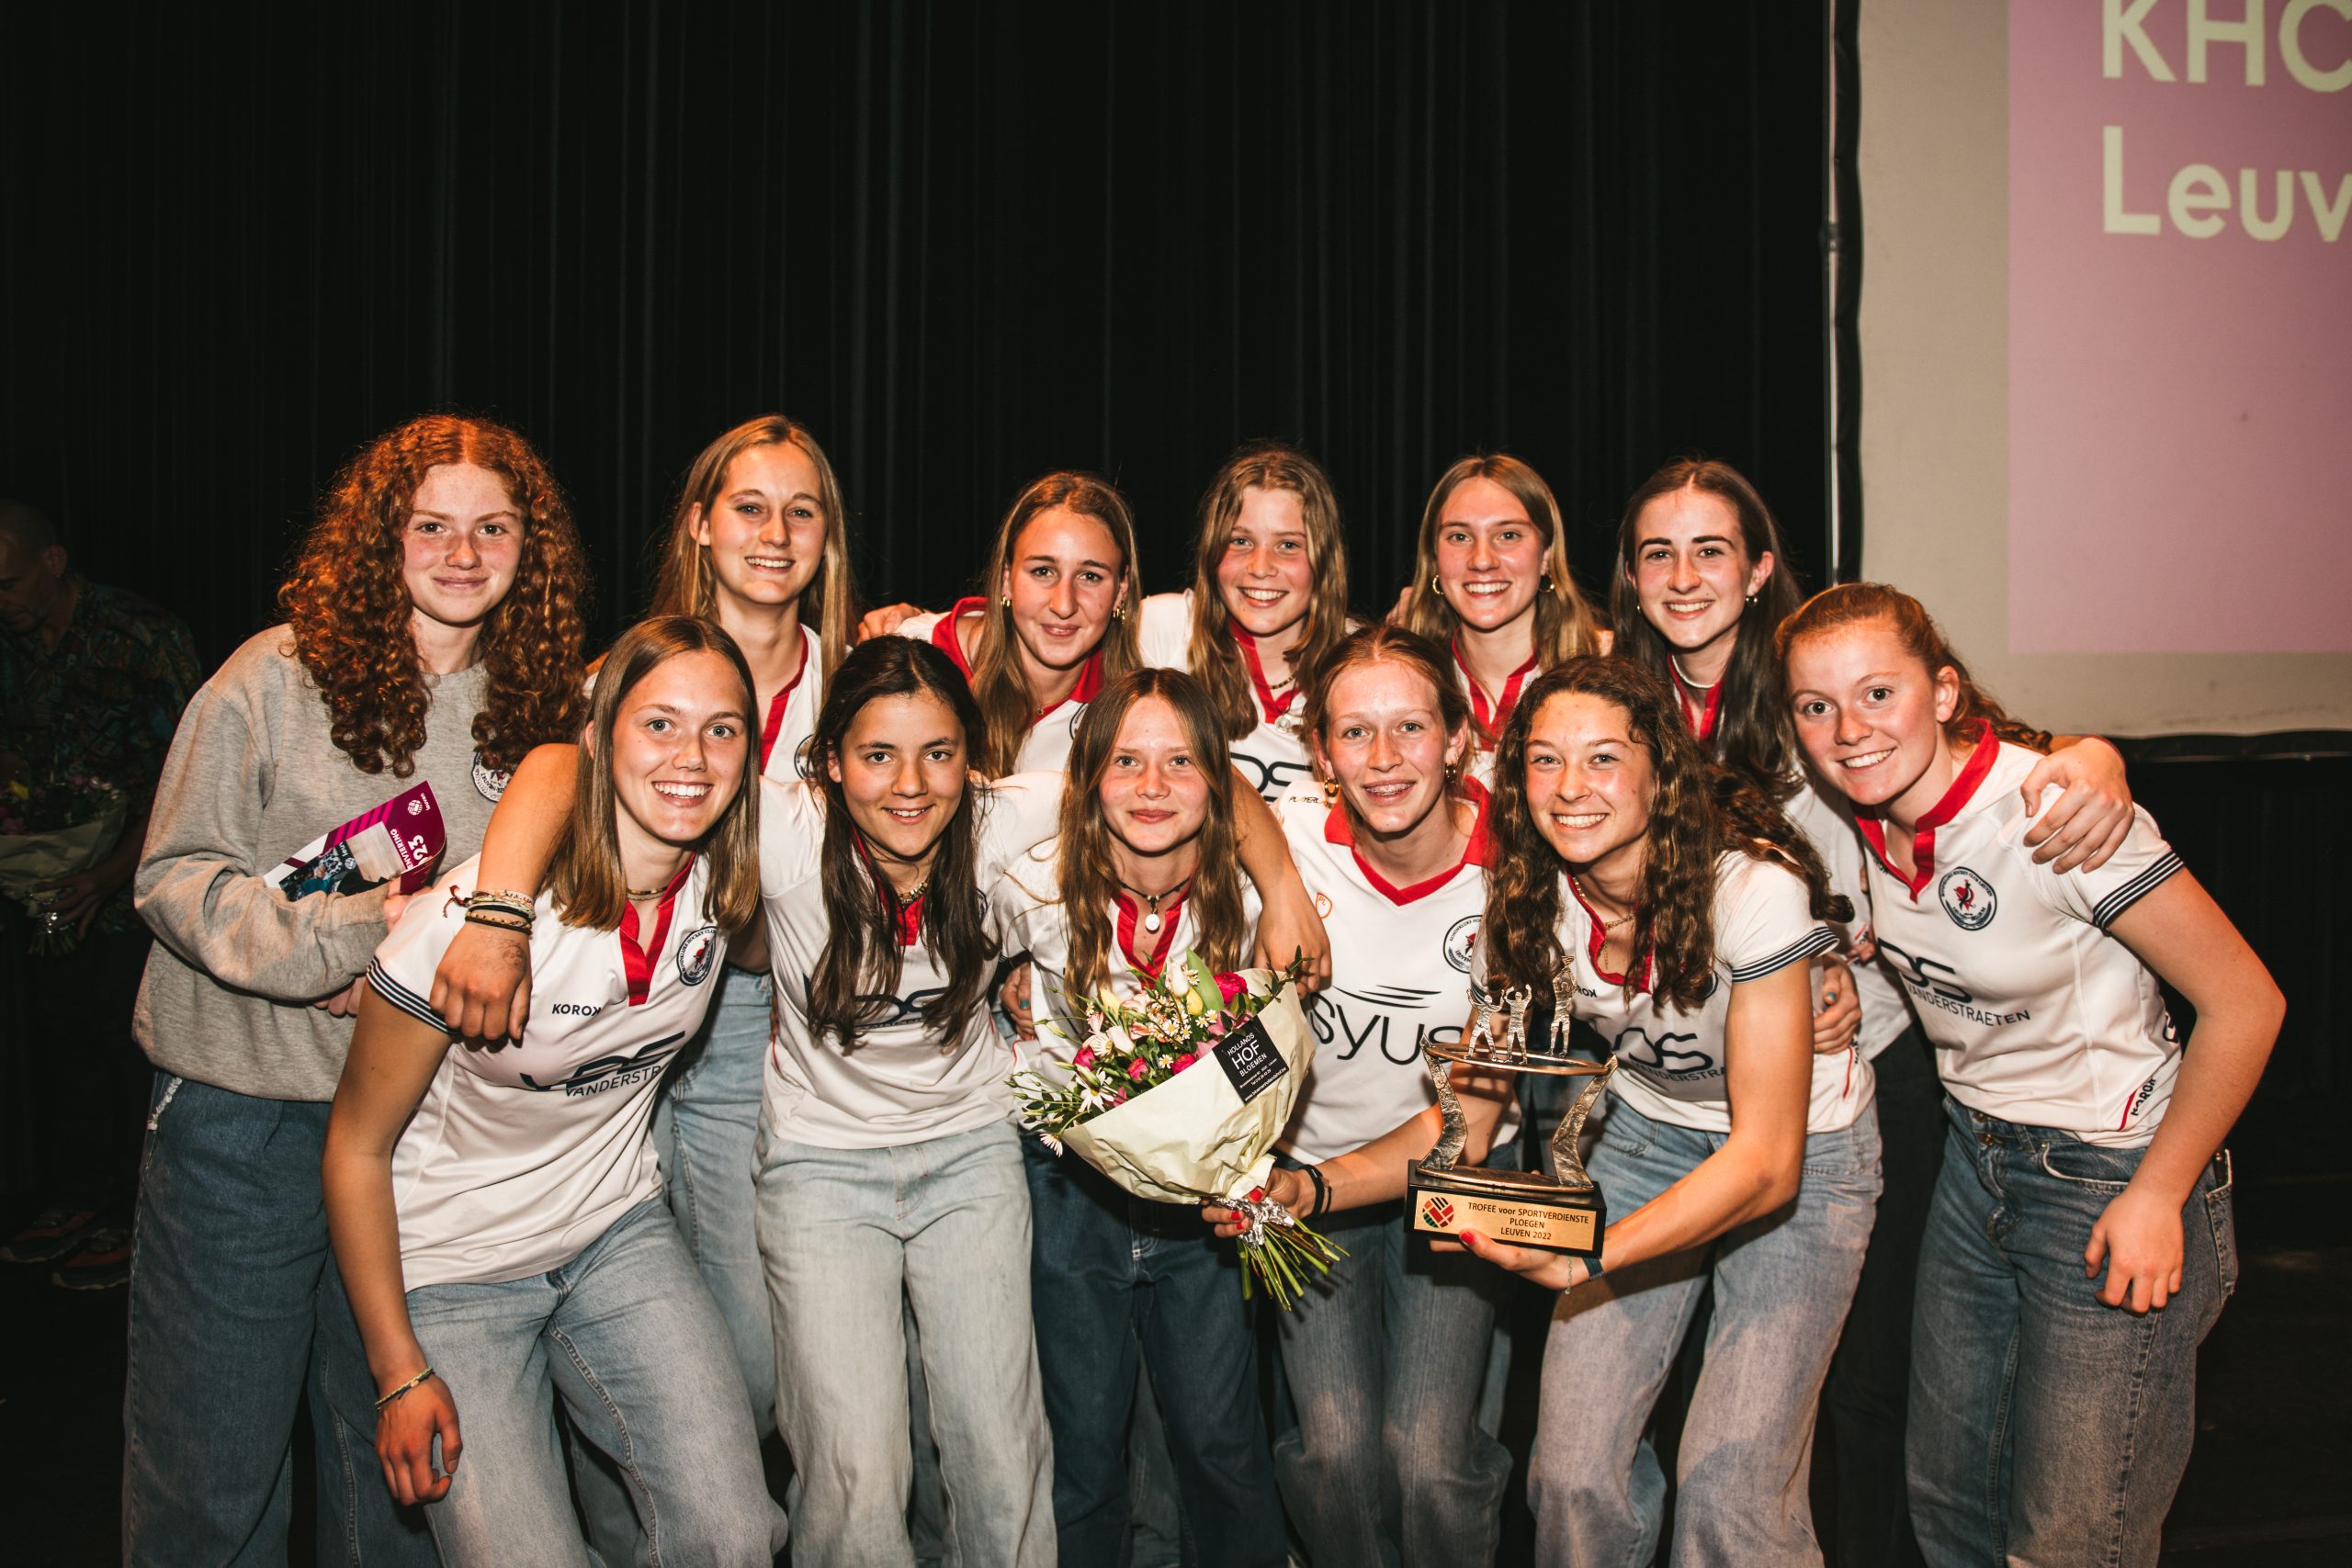 Sportverdienste bij de ploegen: de U16 girls van KHC Leuven